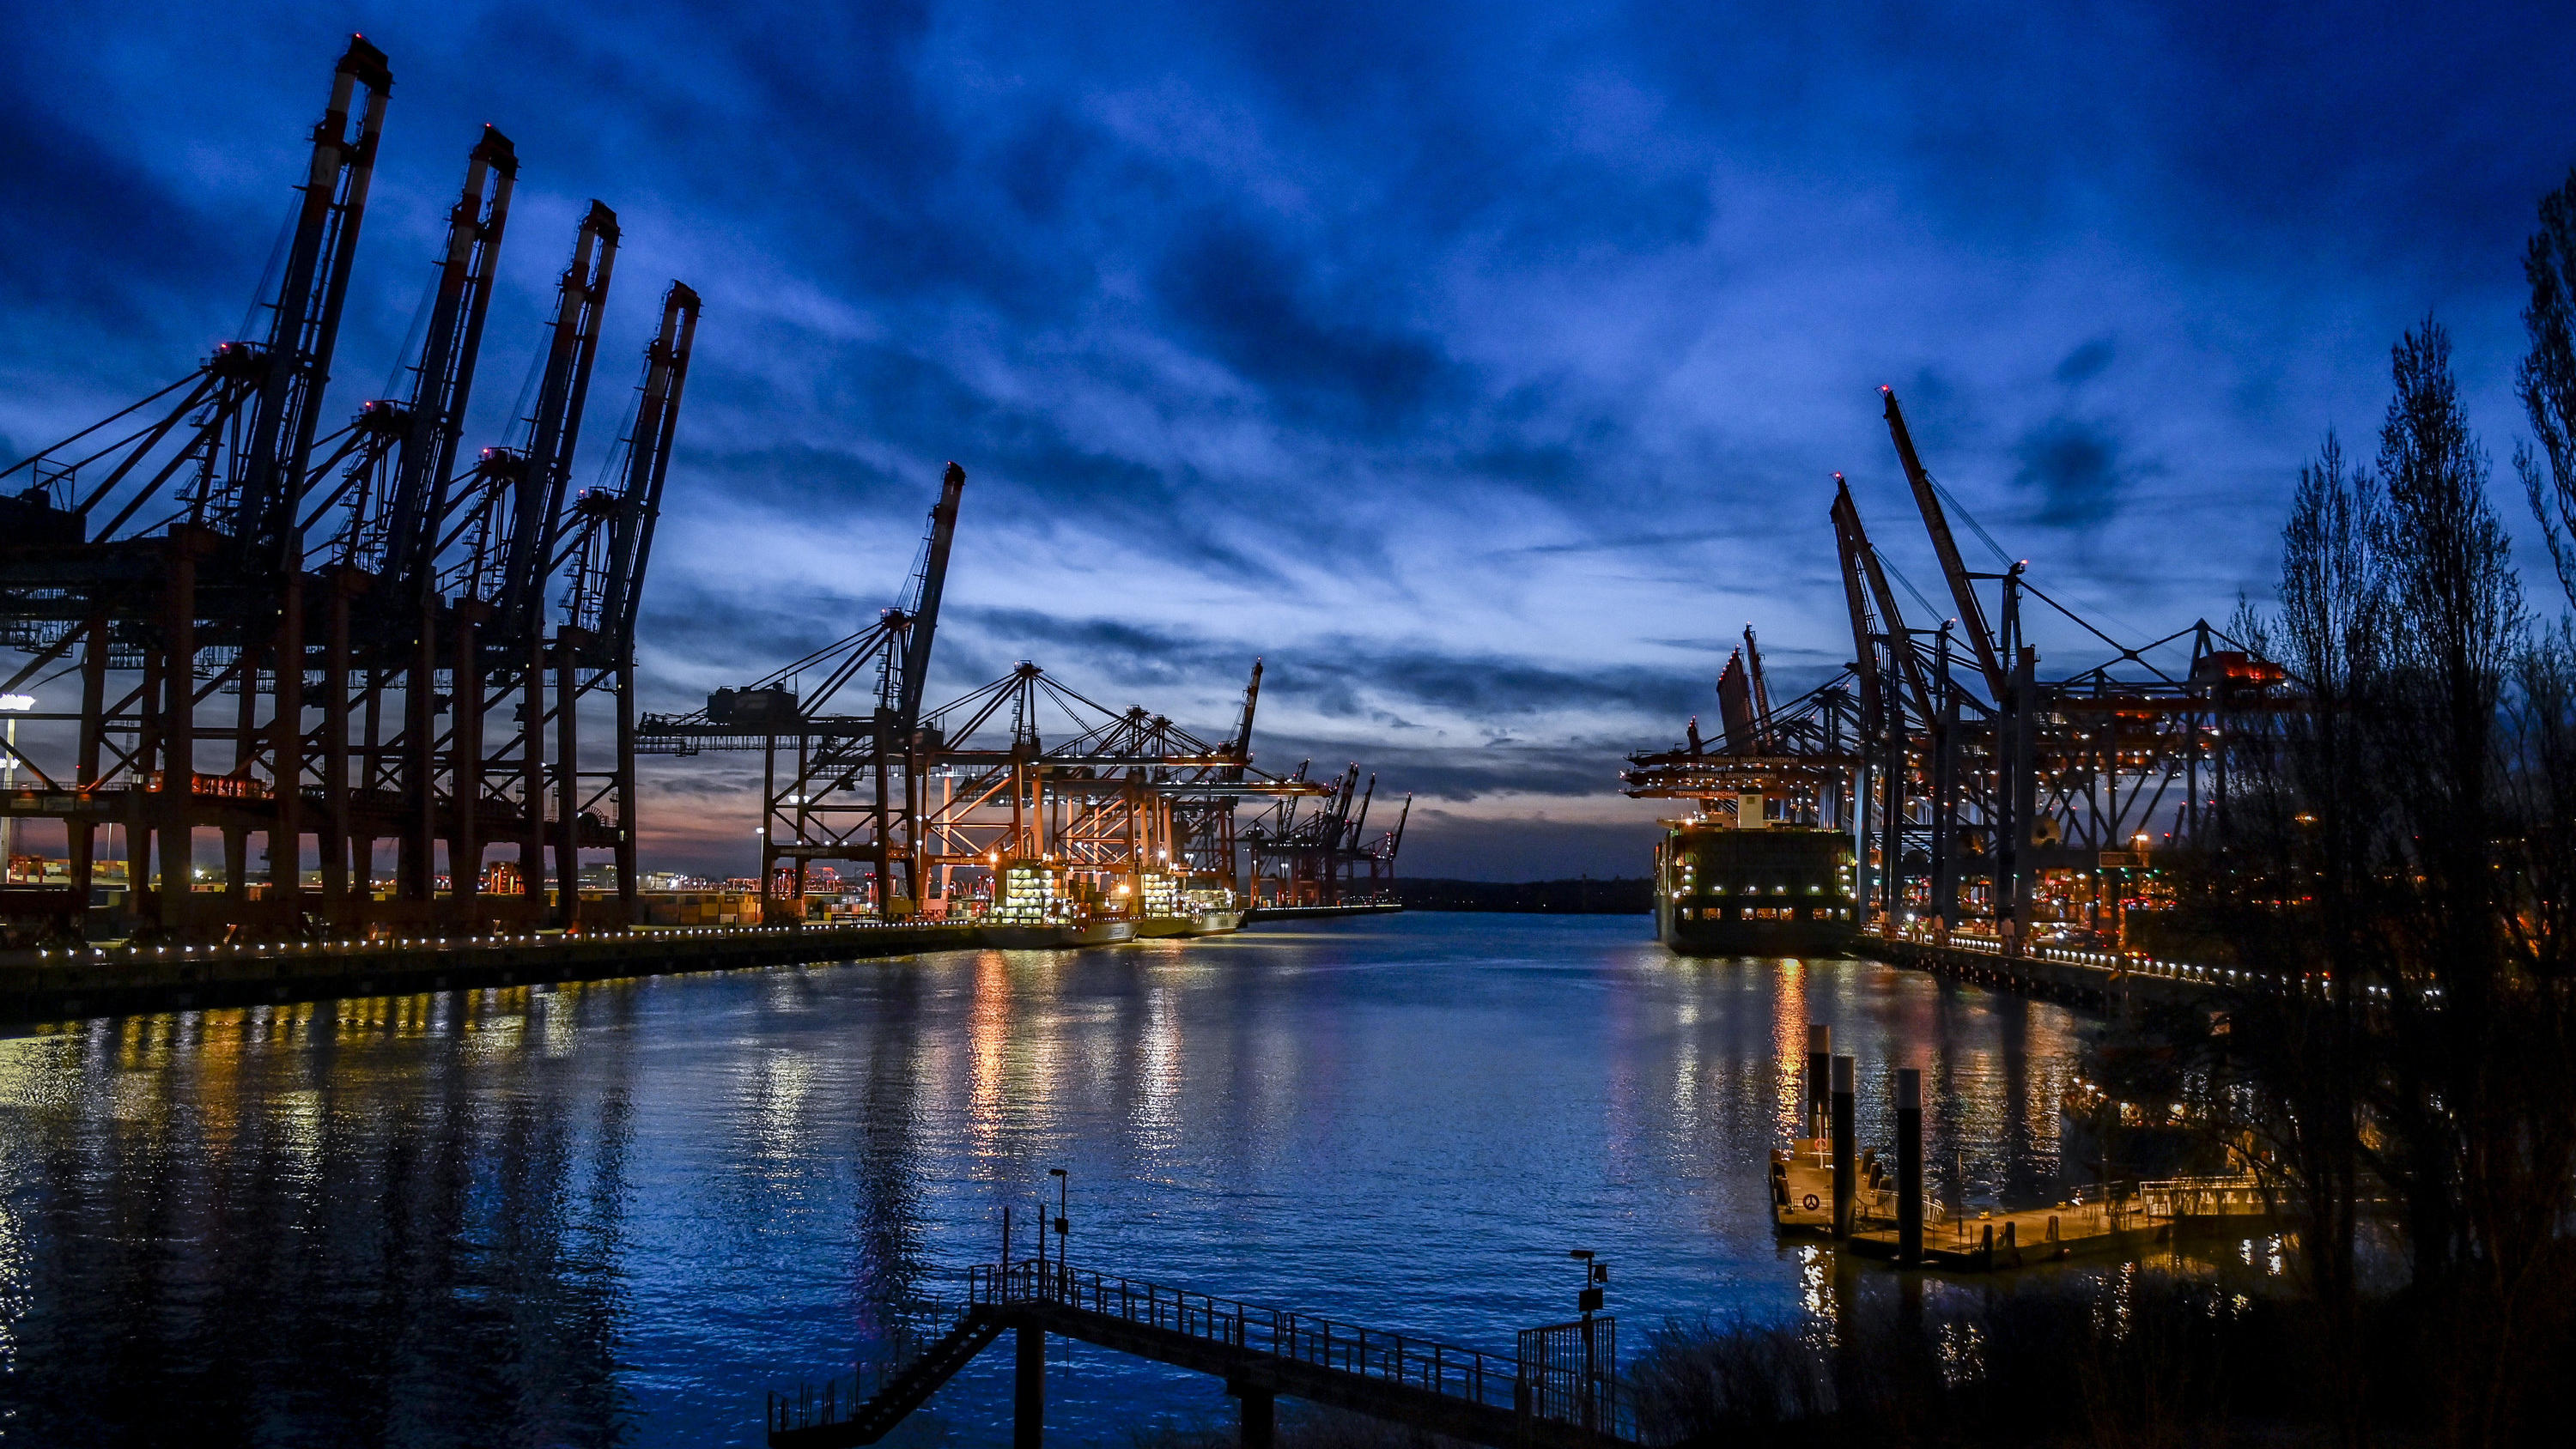 ARCHIV - 24.03.2020, Hamburg: Containerschiffe liegen an den Terminals in Waltershof im Hamburger Hafen. (zu dpa «Statistisches Bundesamt zu Exporten im Februar 2020» vom 09.04.2020) Foto: Axel Heimken/dpa +++ dpa-Bildfunk +++